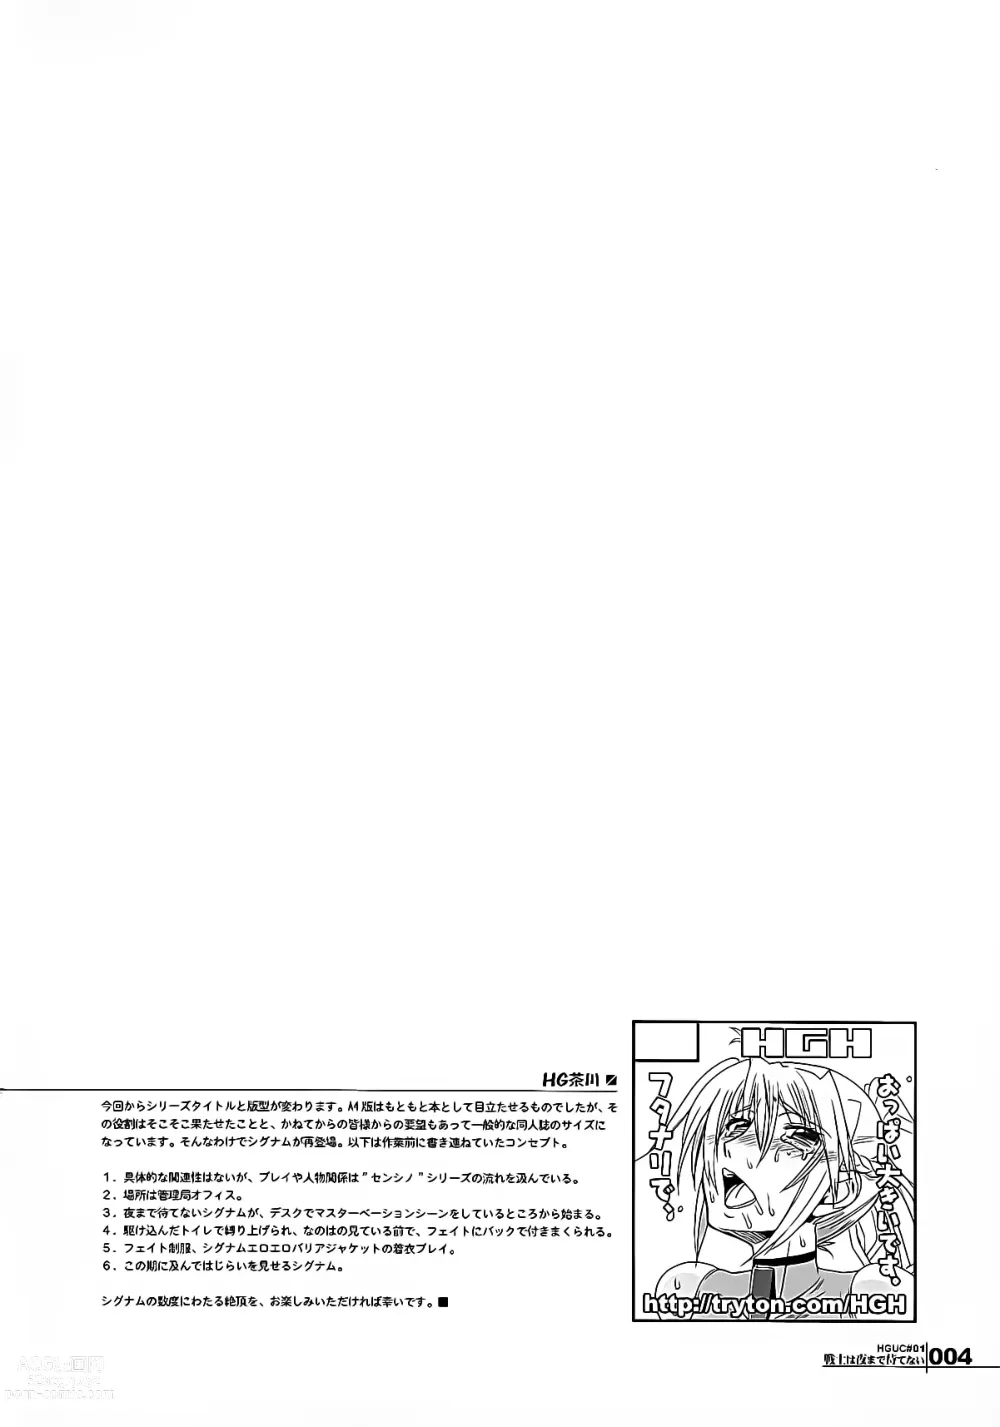 Page 4 of doujinshi HGUC#01::Senshi ha Yoru Made Mate Nai